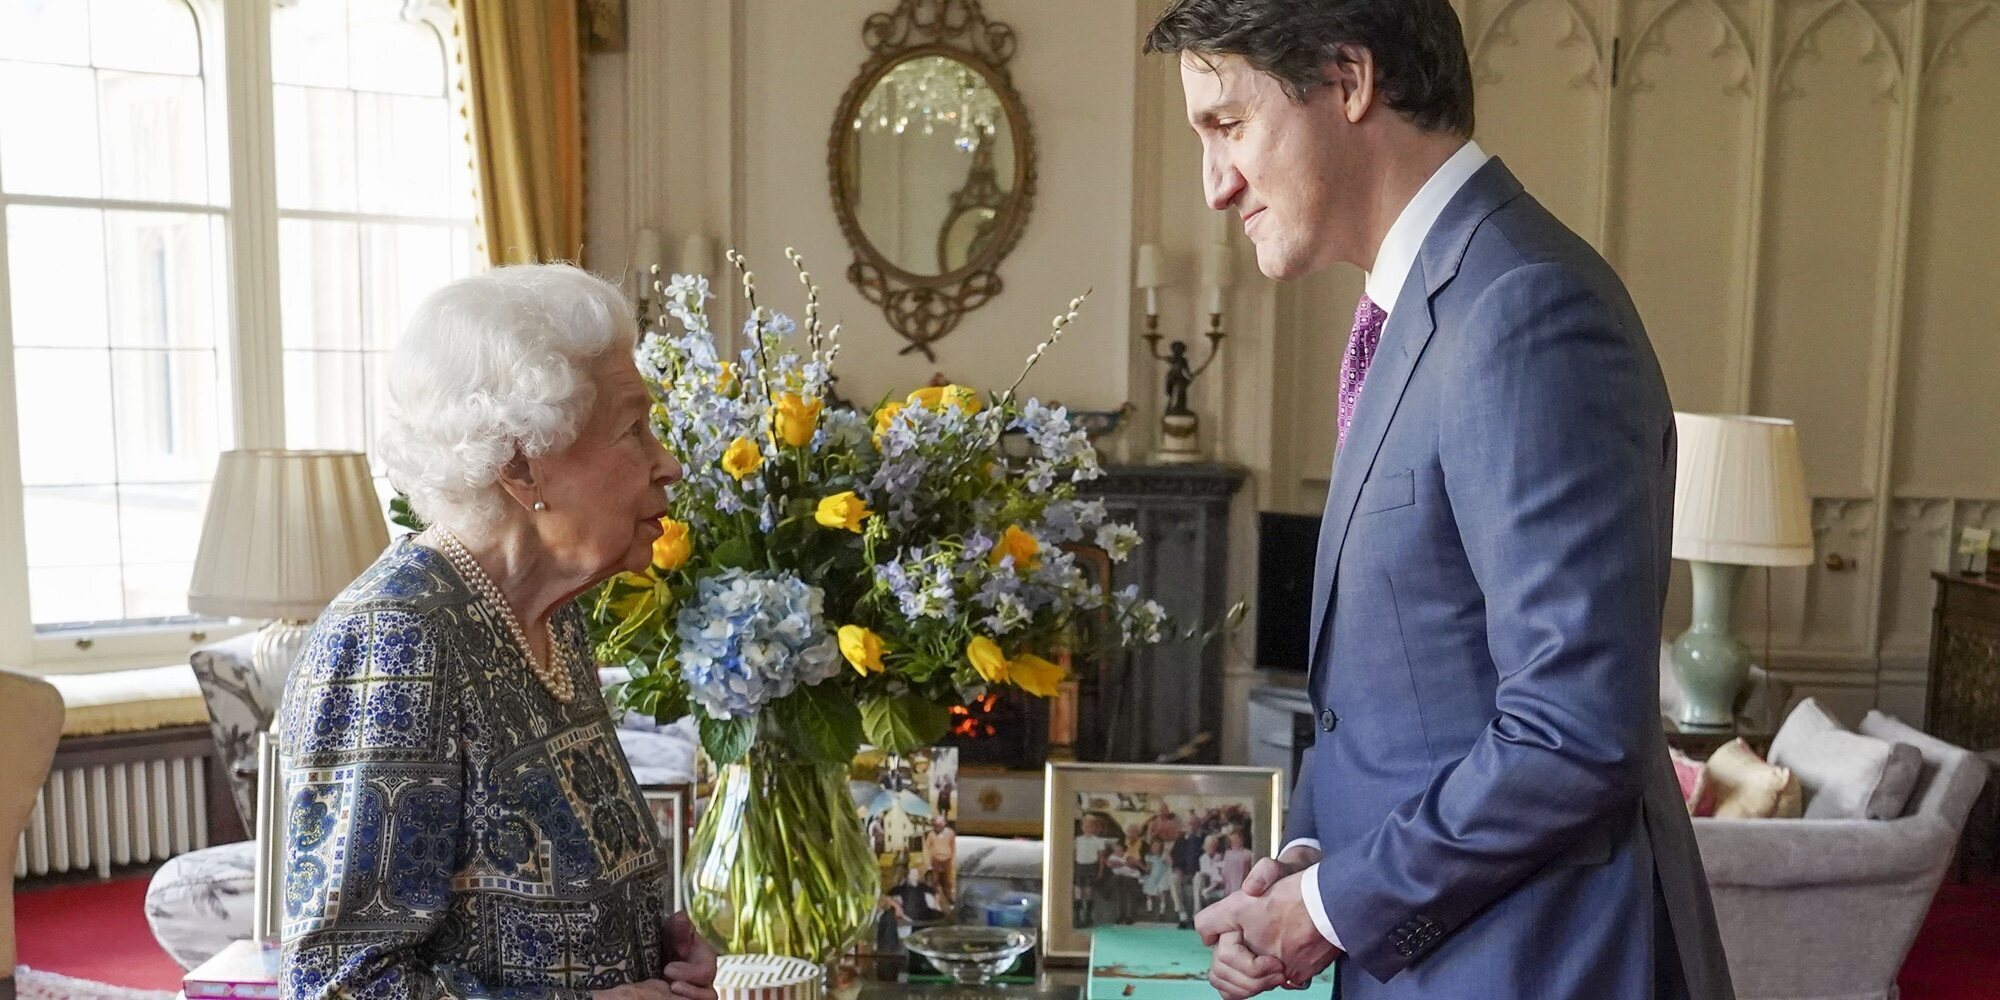 La Reina Isabel recibe a Justin Trudeau, Primer Ministro de Canadá, en su primer acto presencial tras superar el coronavirus